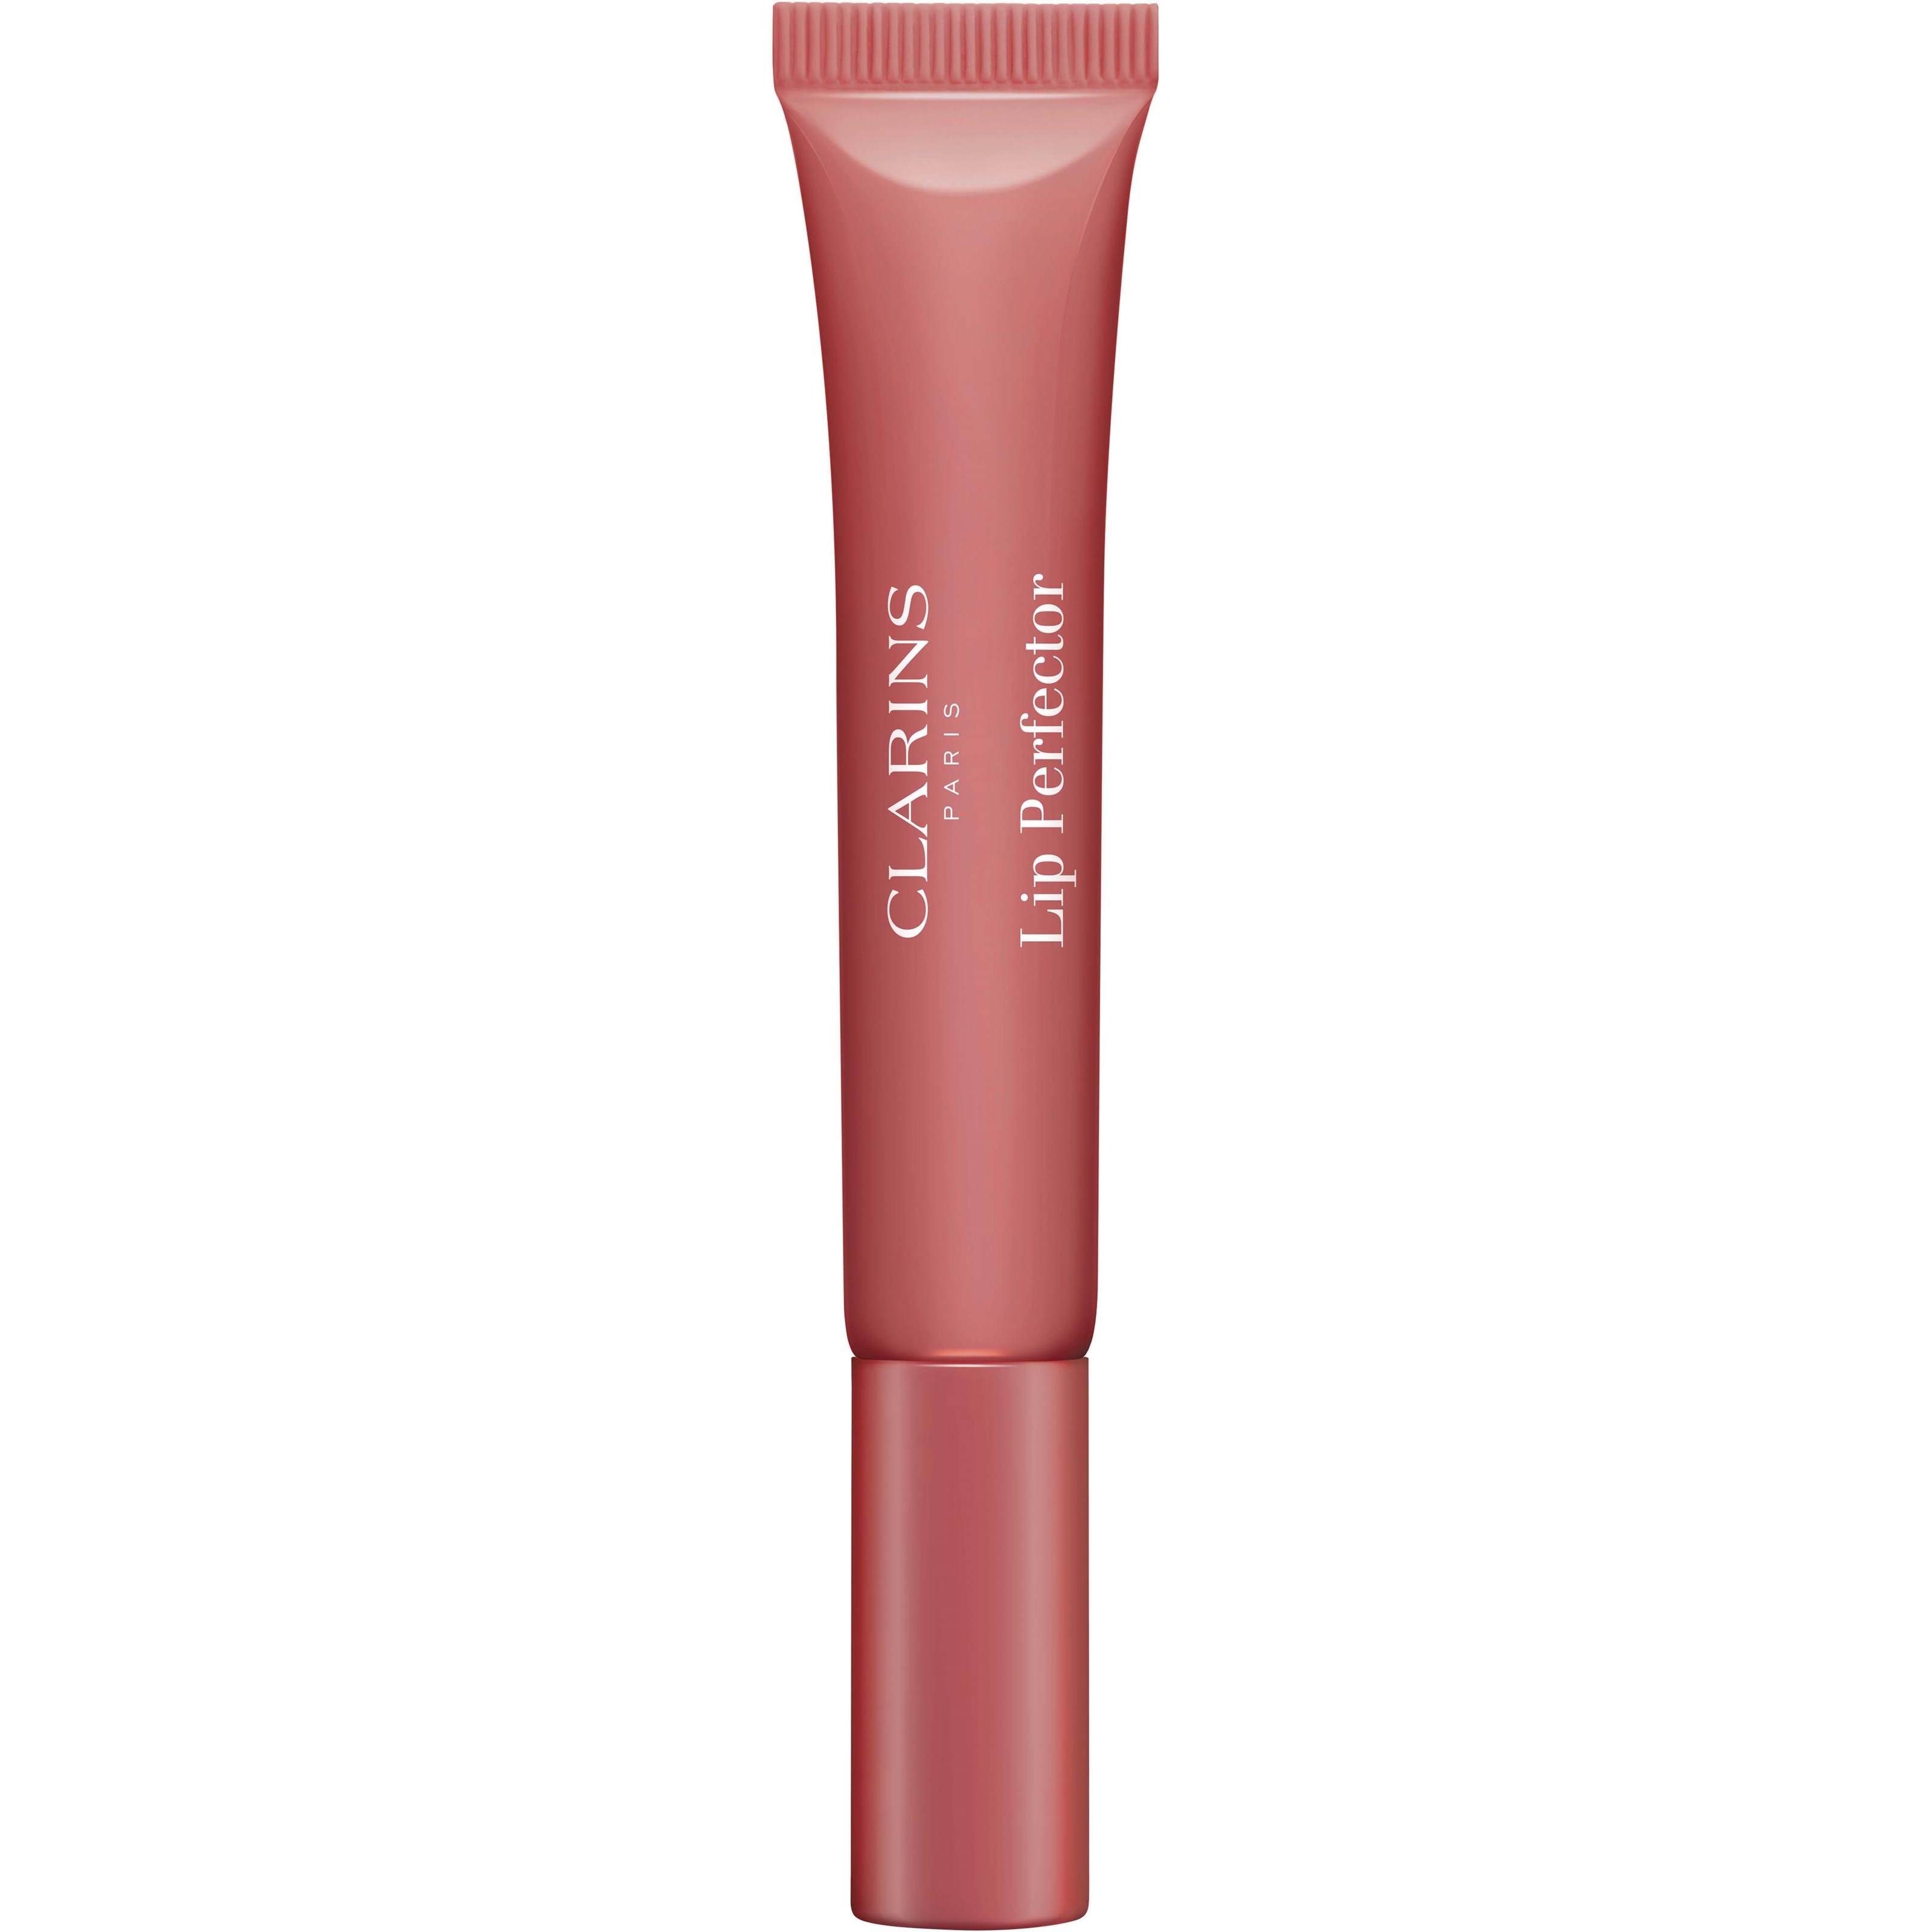 Bilde av Clarins Natural Lip Perfector 16 Intense Rosebud